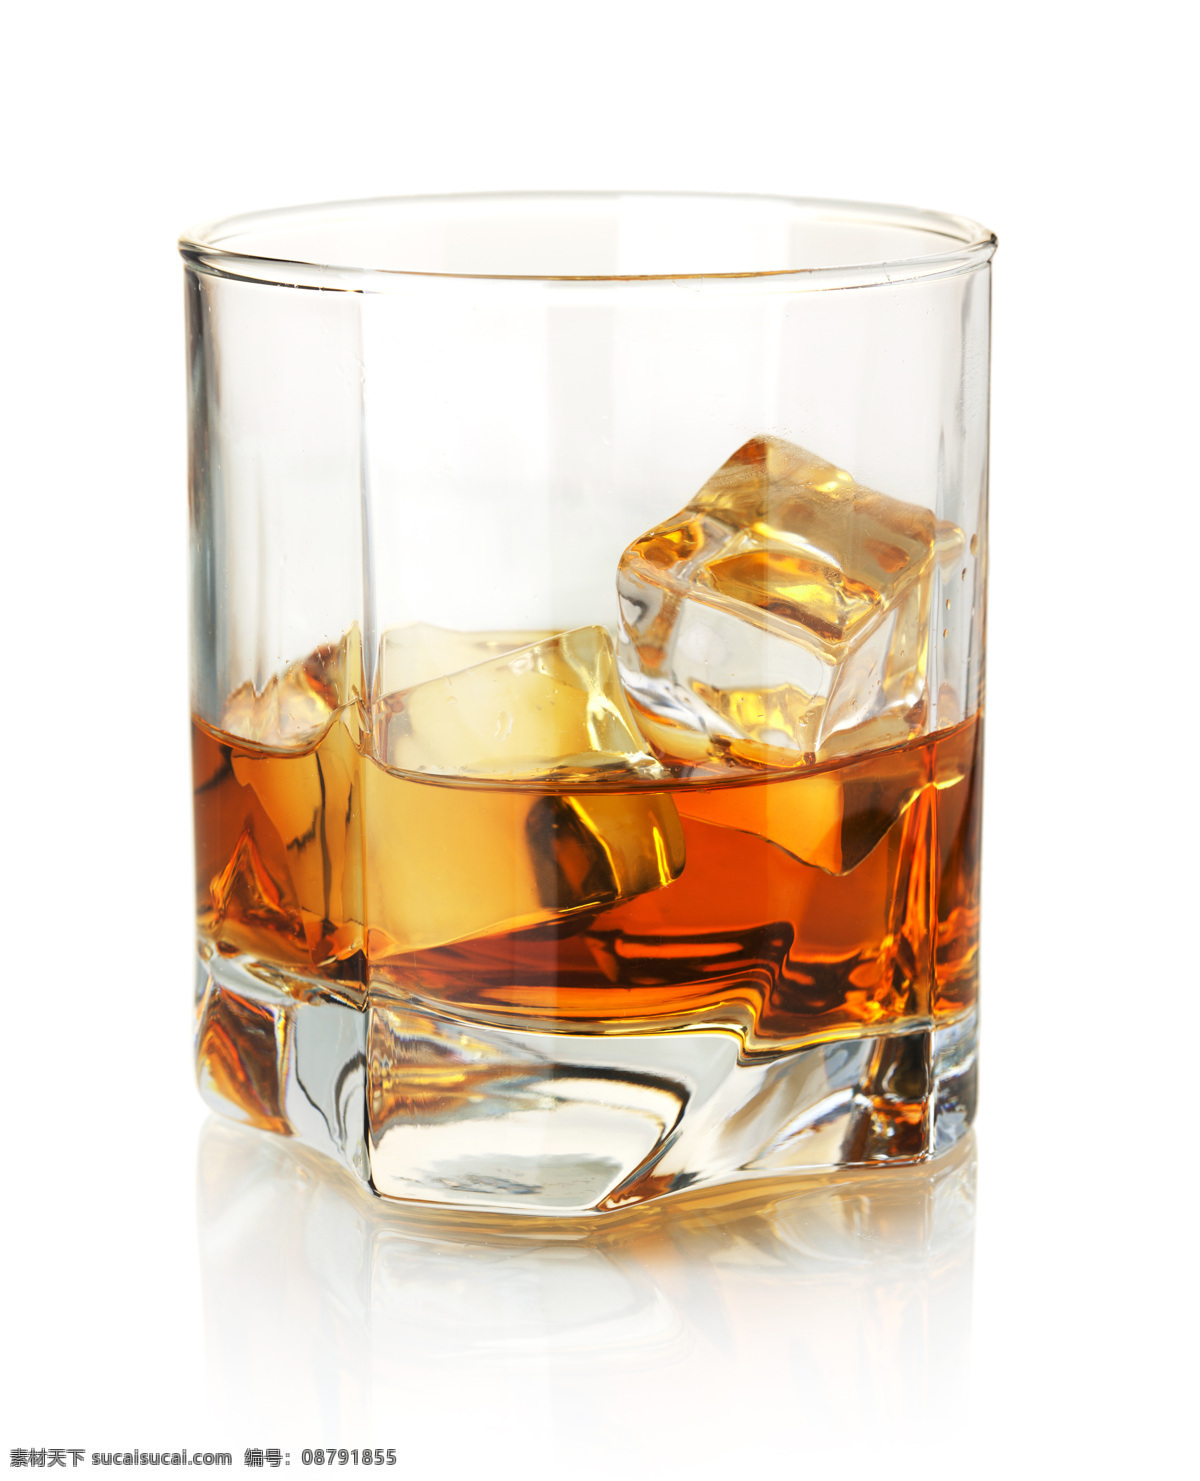 放 冰块 洋酒 加冰洋酒 威士忌 高档洋酒 美酒 酒水饮料 玻璃酒杯 杯子 酒类图片 餐饮美食